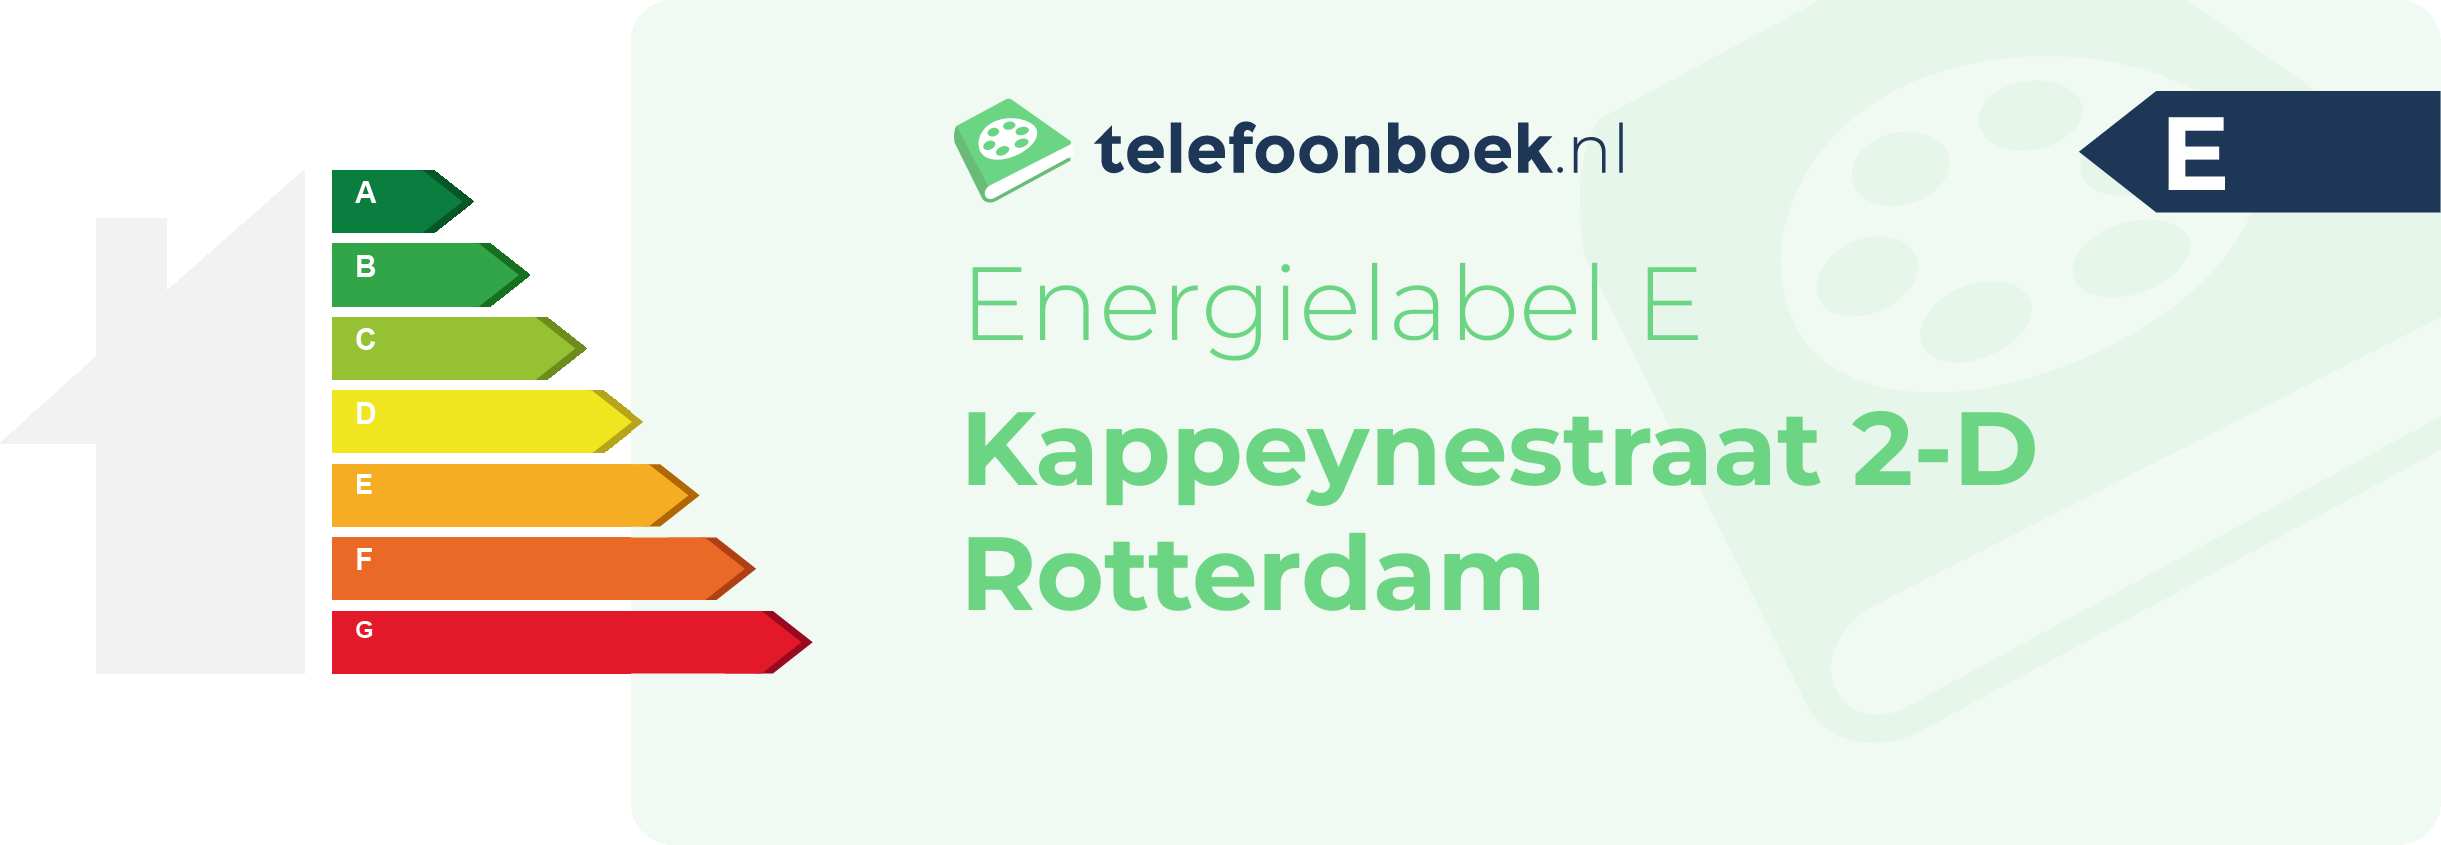 Energielabel Kappeynestraat 2-D Rotterdam